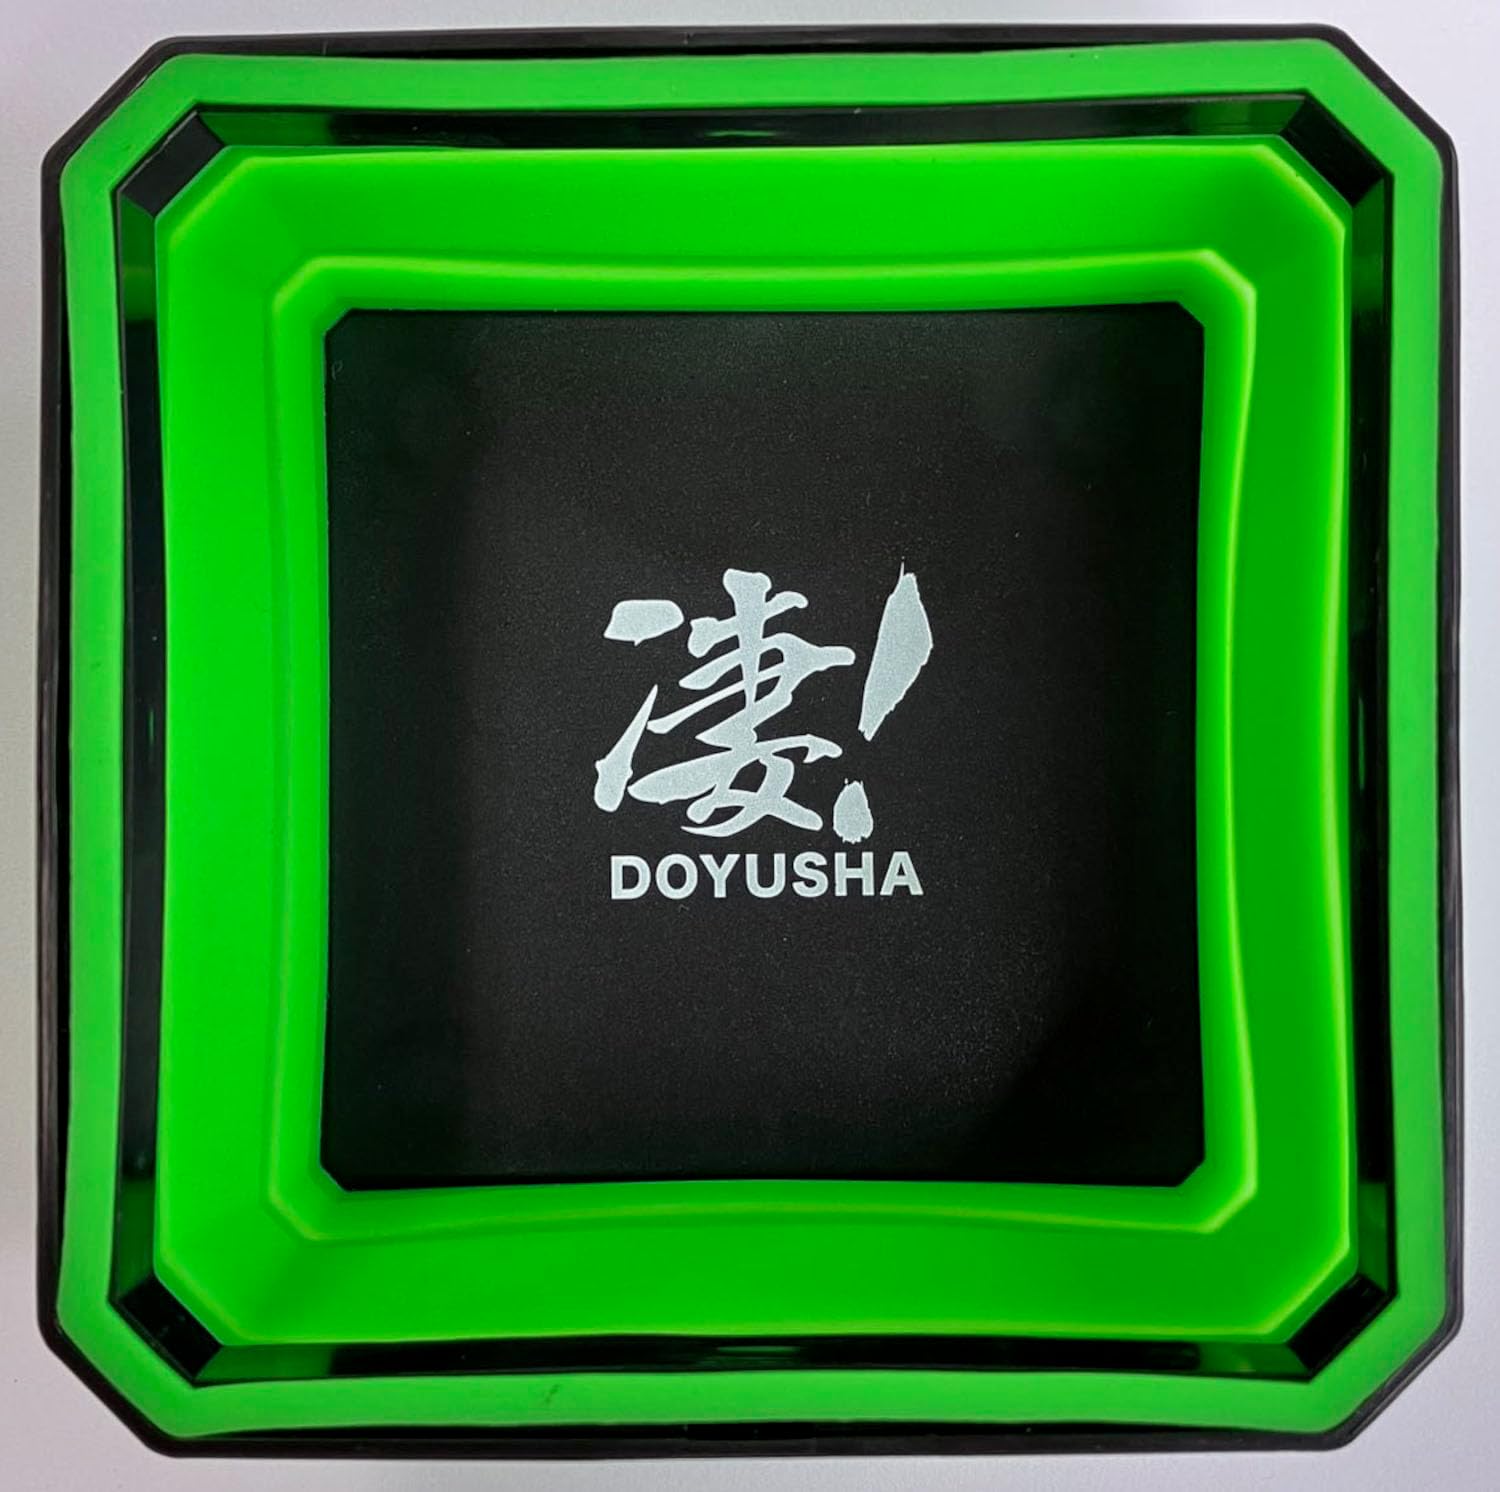 Doyusha Awesome Hobby Silicone Parts Tray Green - BanzaiHobby